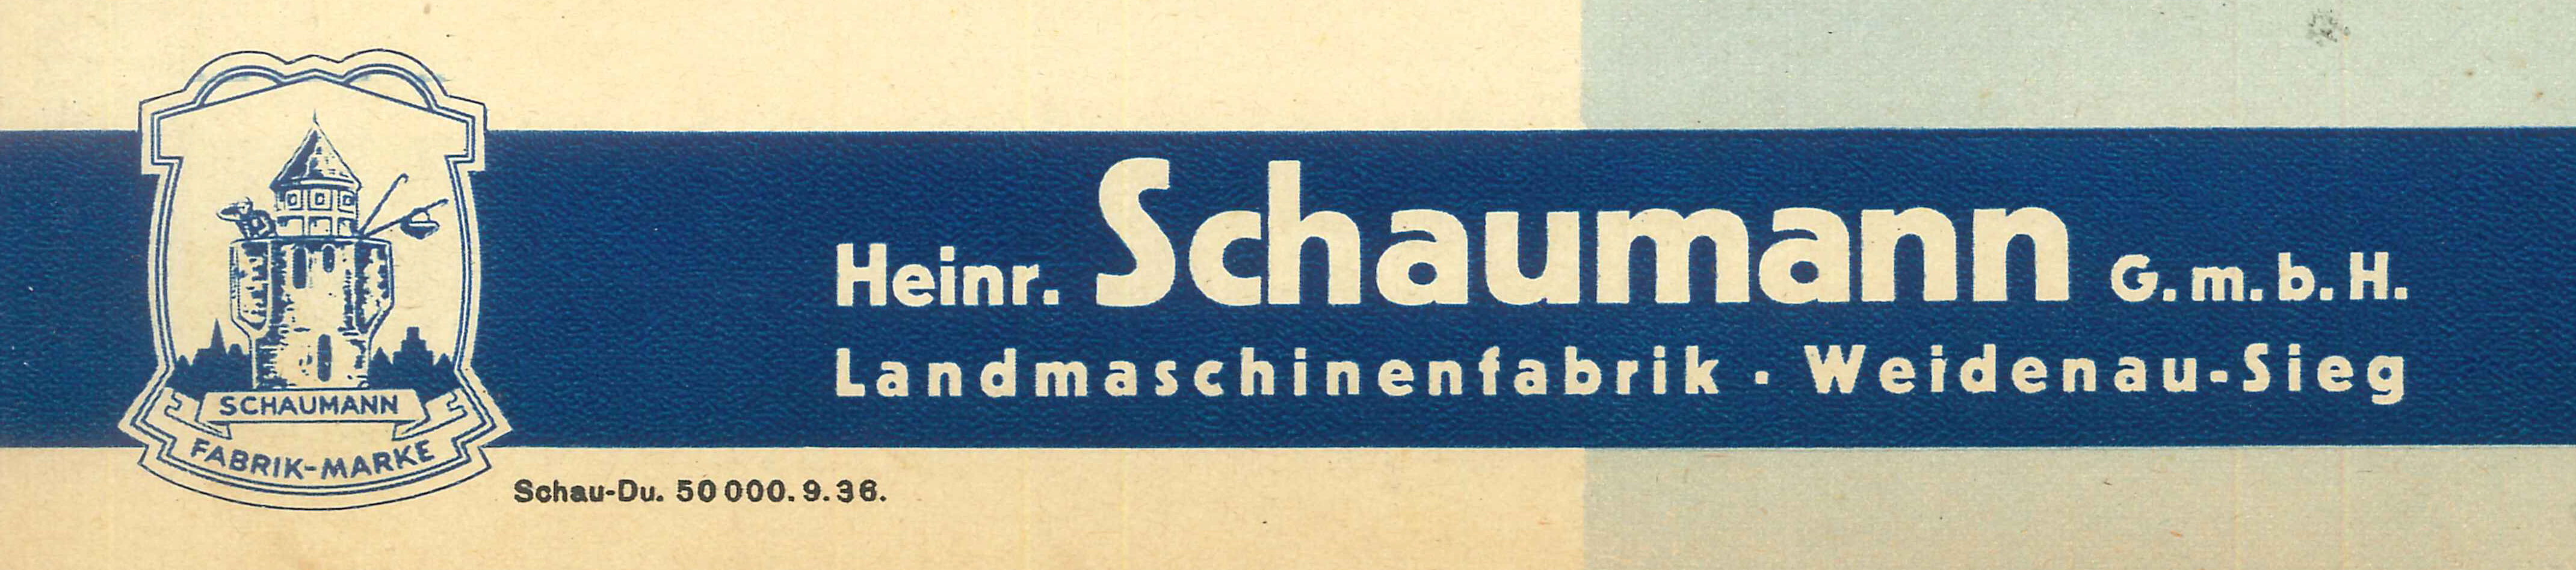 Heinr. Schaumann GmbH Landmaschinenfabrik